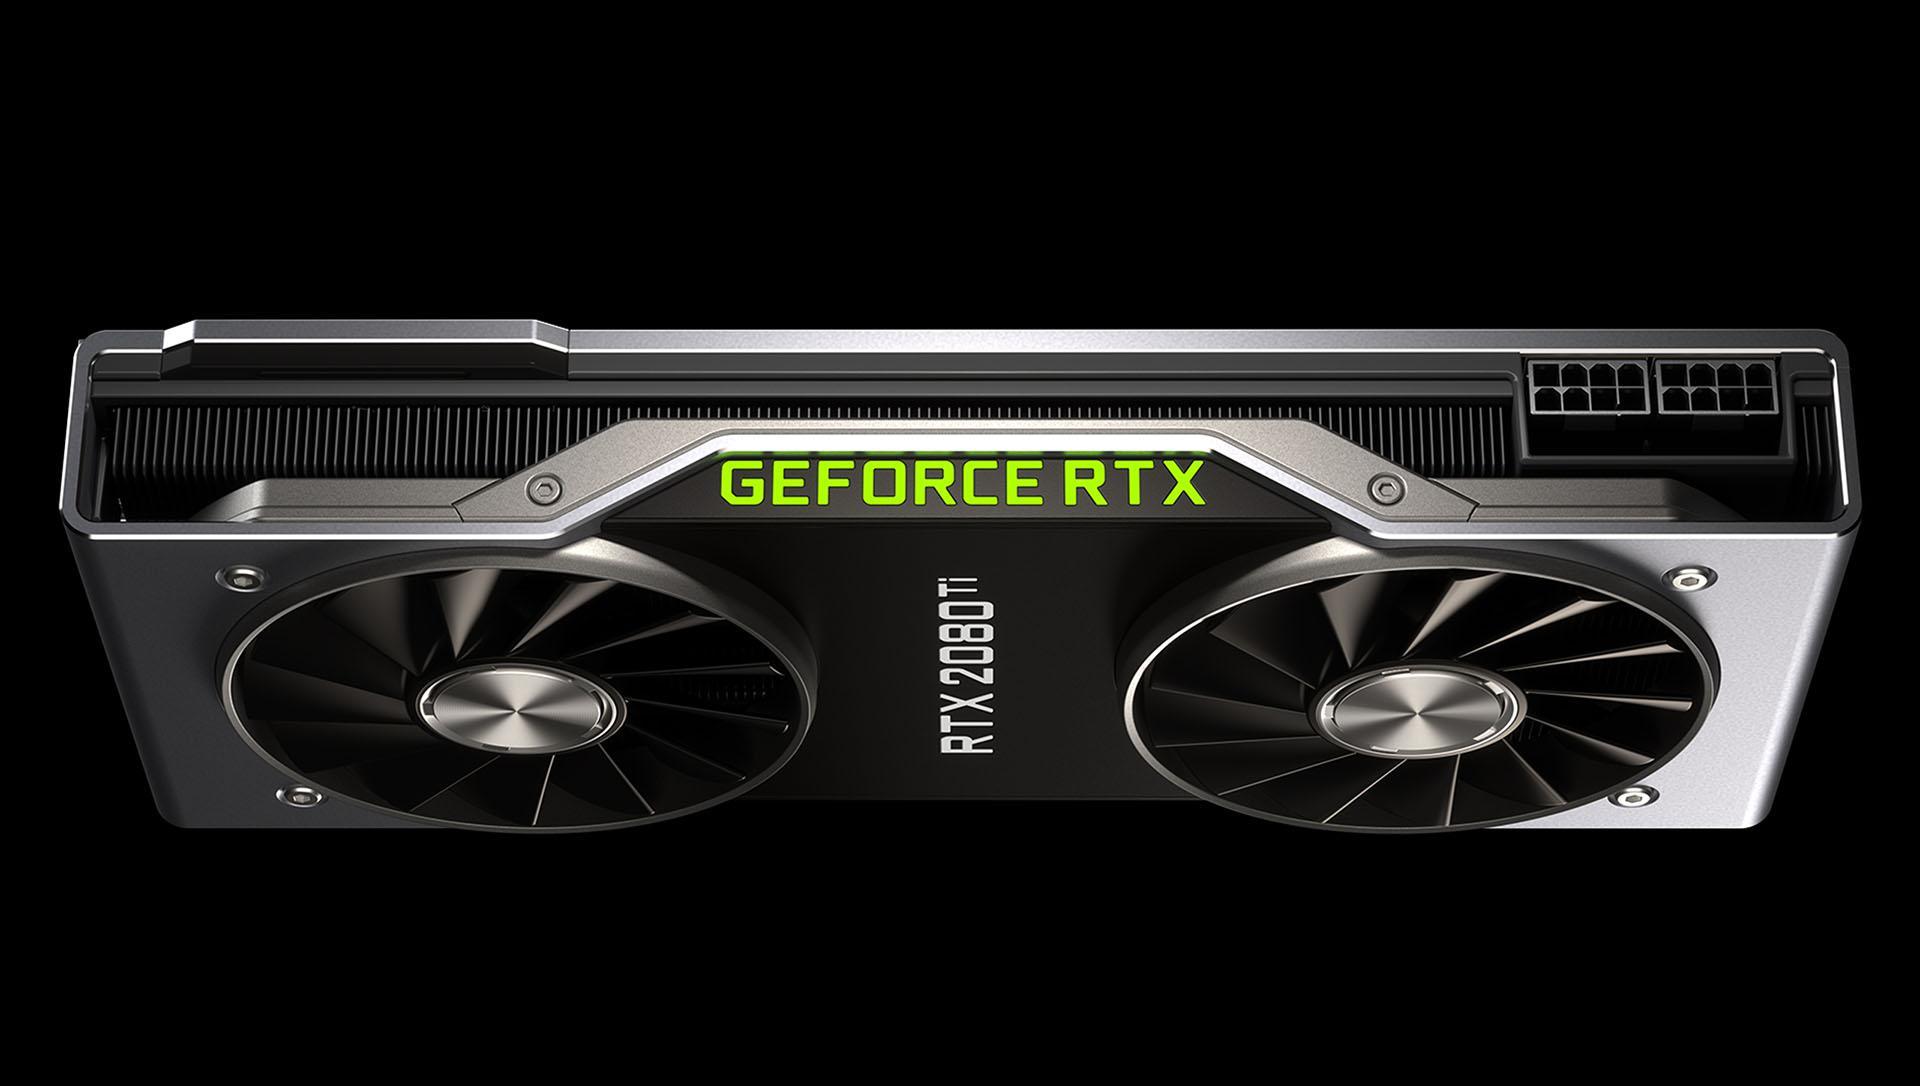 Bate-papo sobre o lançamento da nova série GeForce RTX